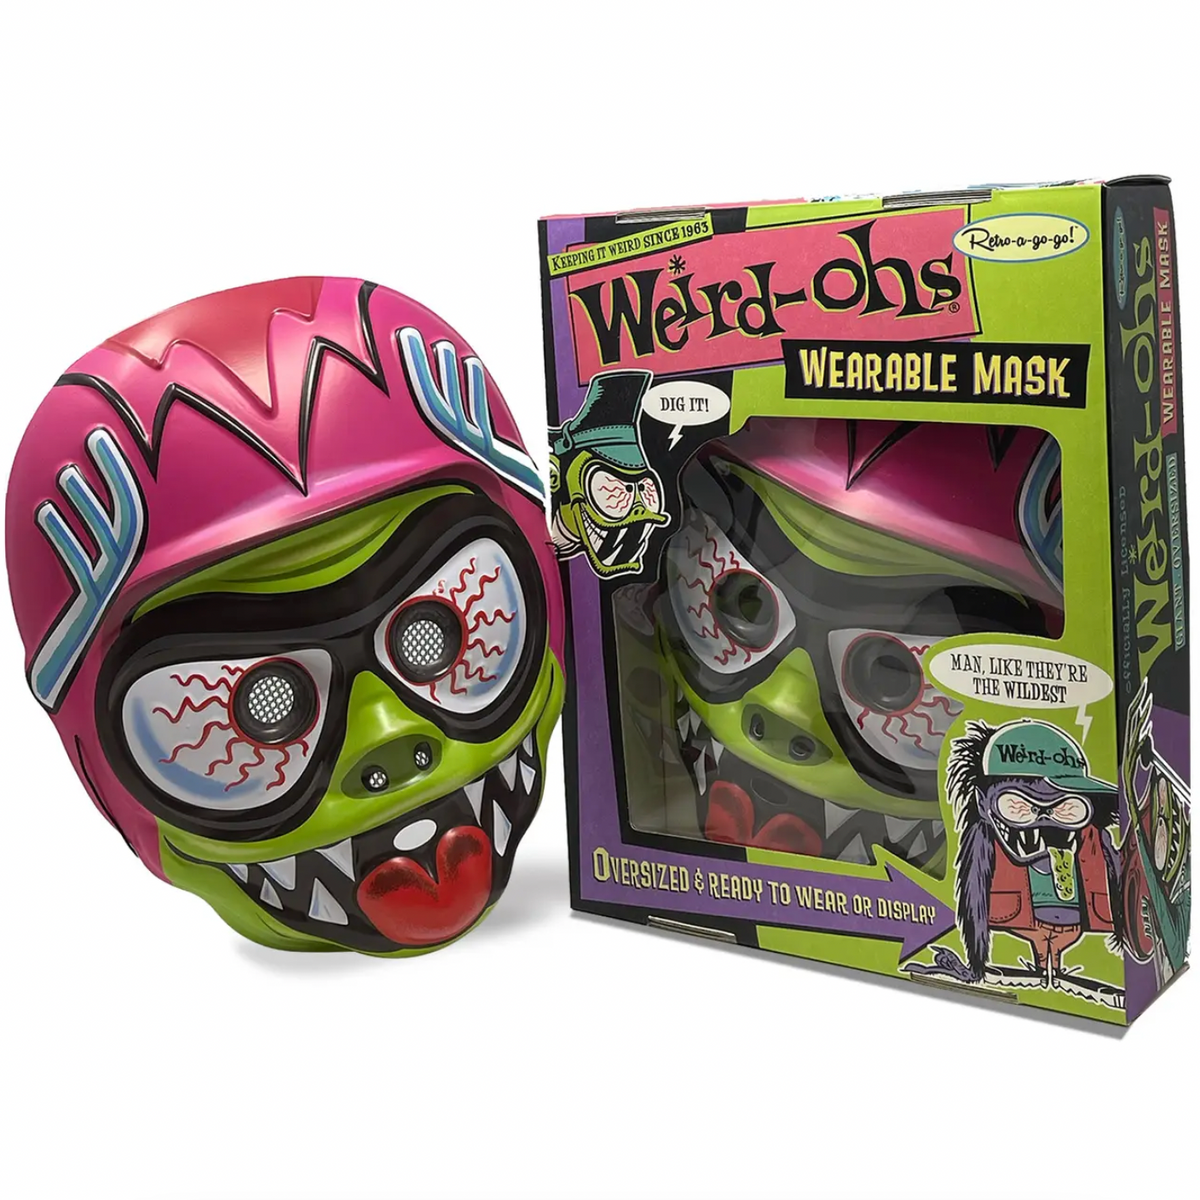 Weird-ohs Digger Wearable Mask - Green Machine